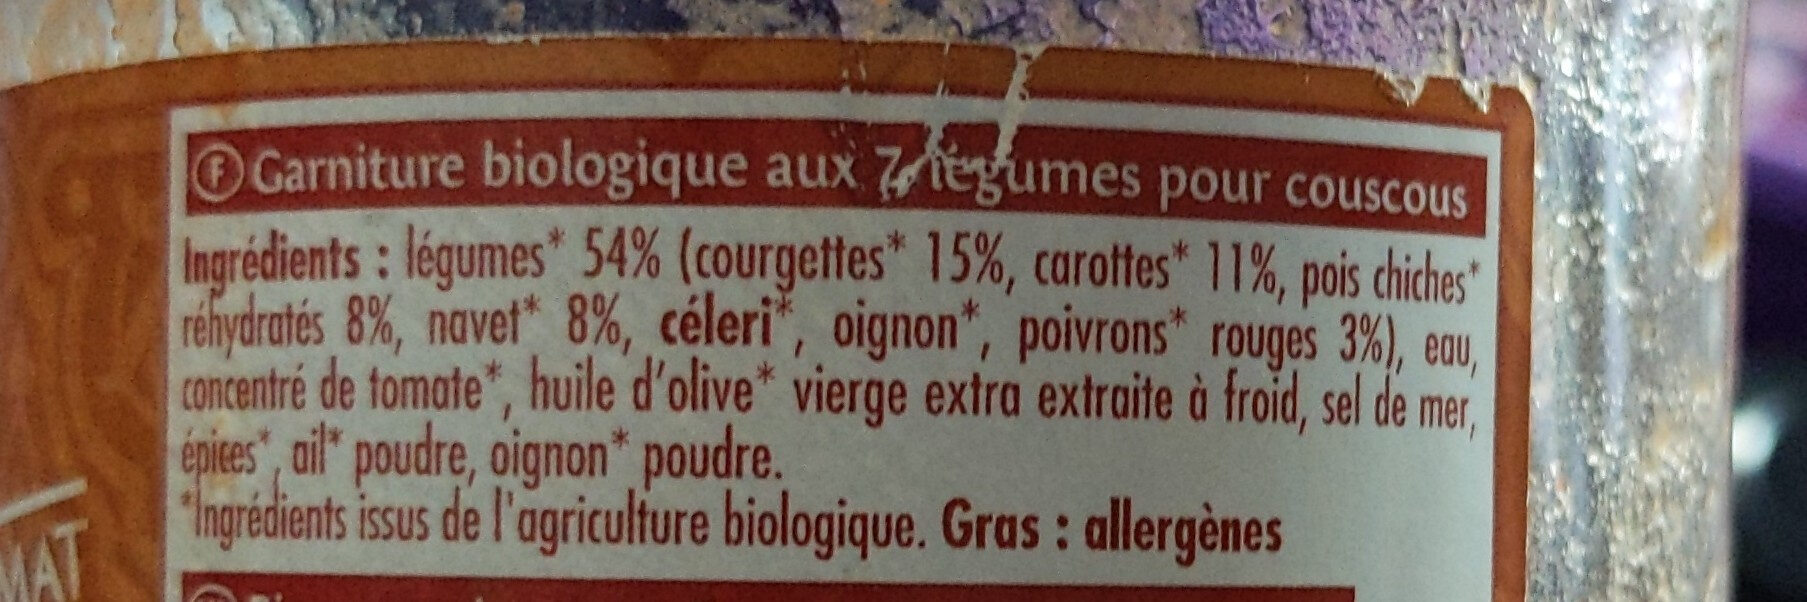 Couscous aux 7 légumes - Ingrédients